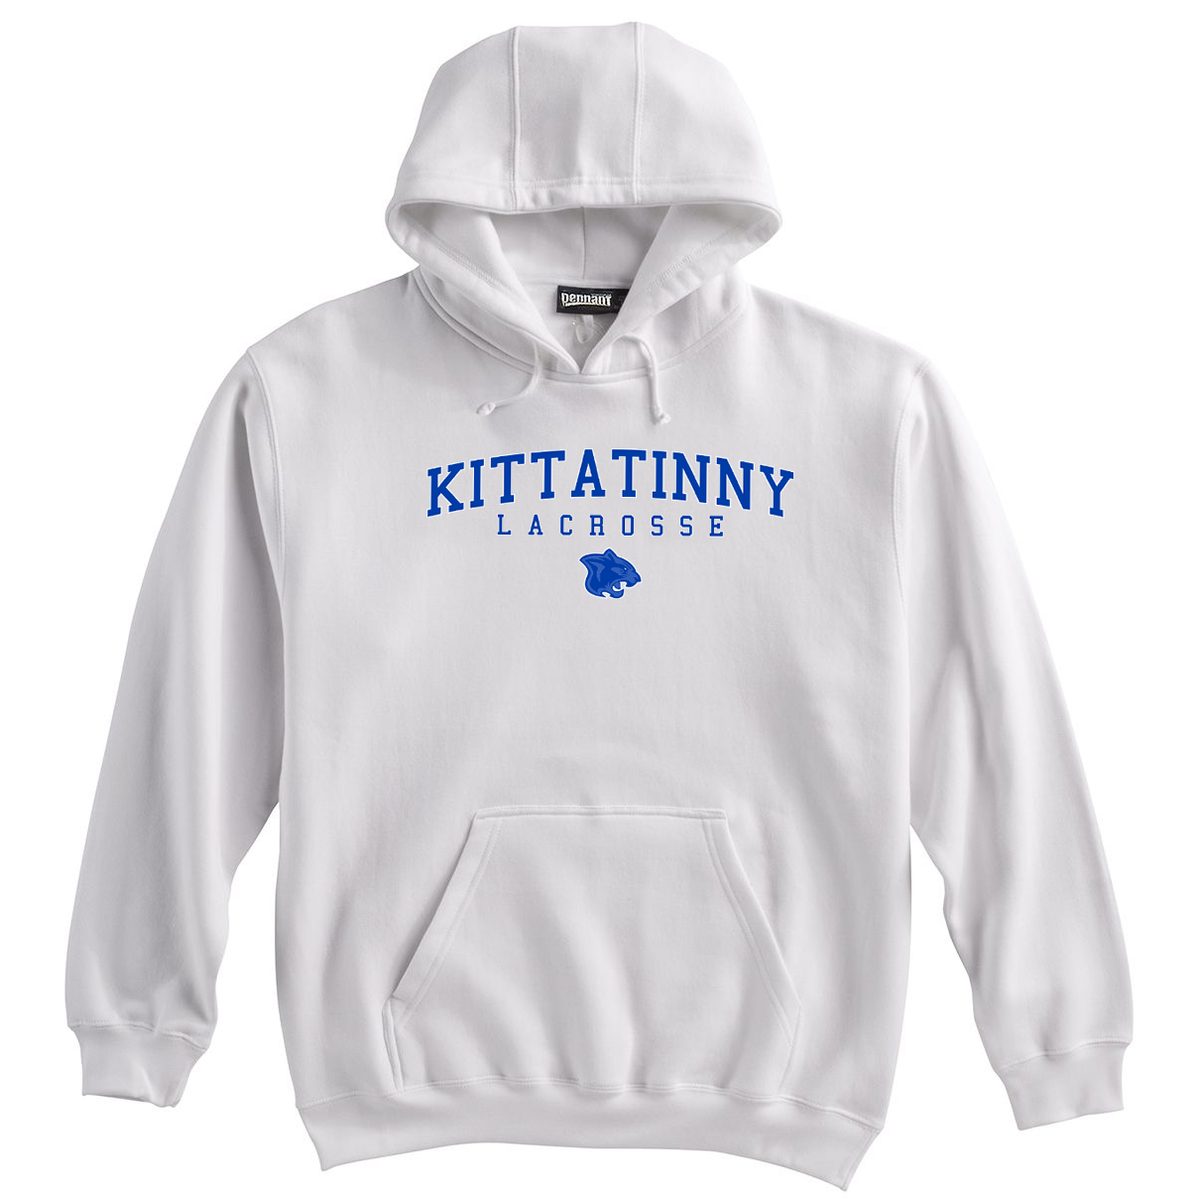 Kittatinny Lacrosse Sweatshirt